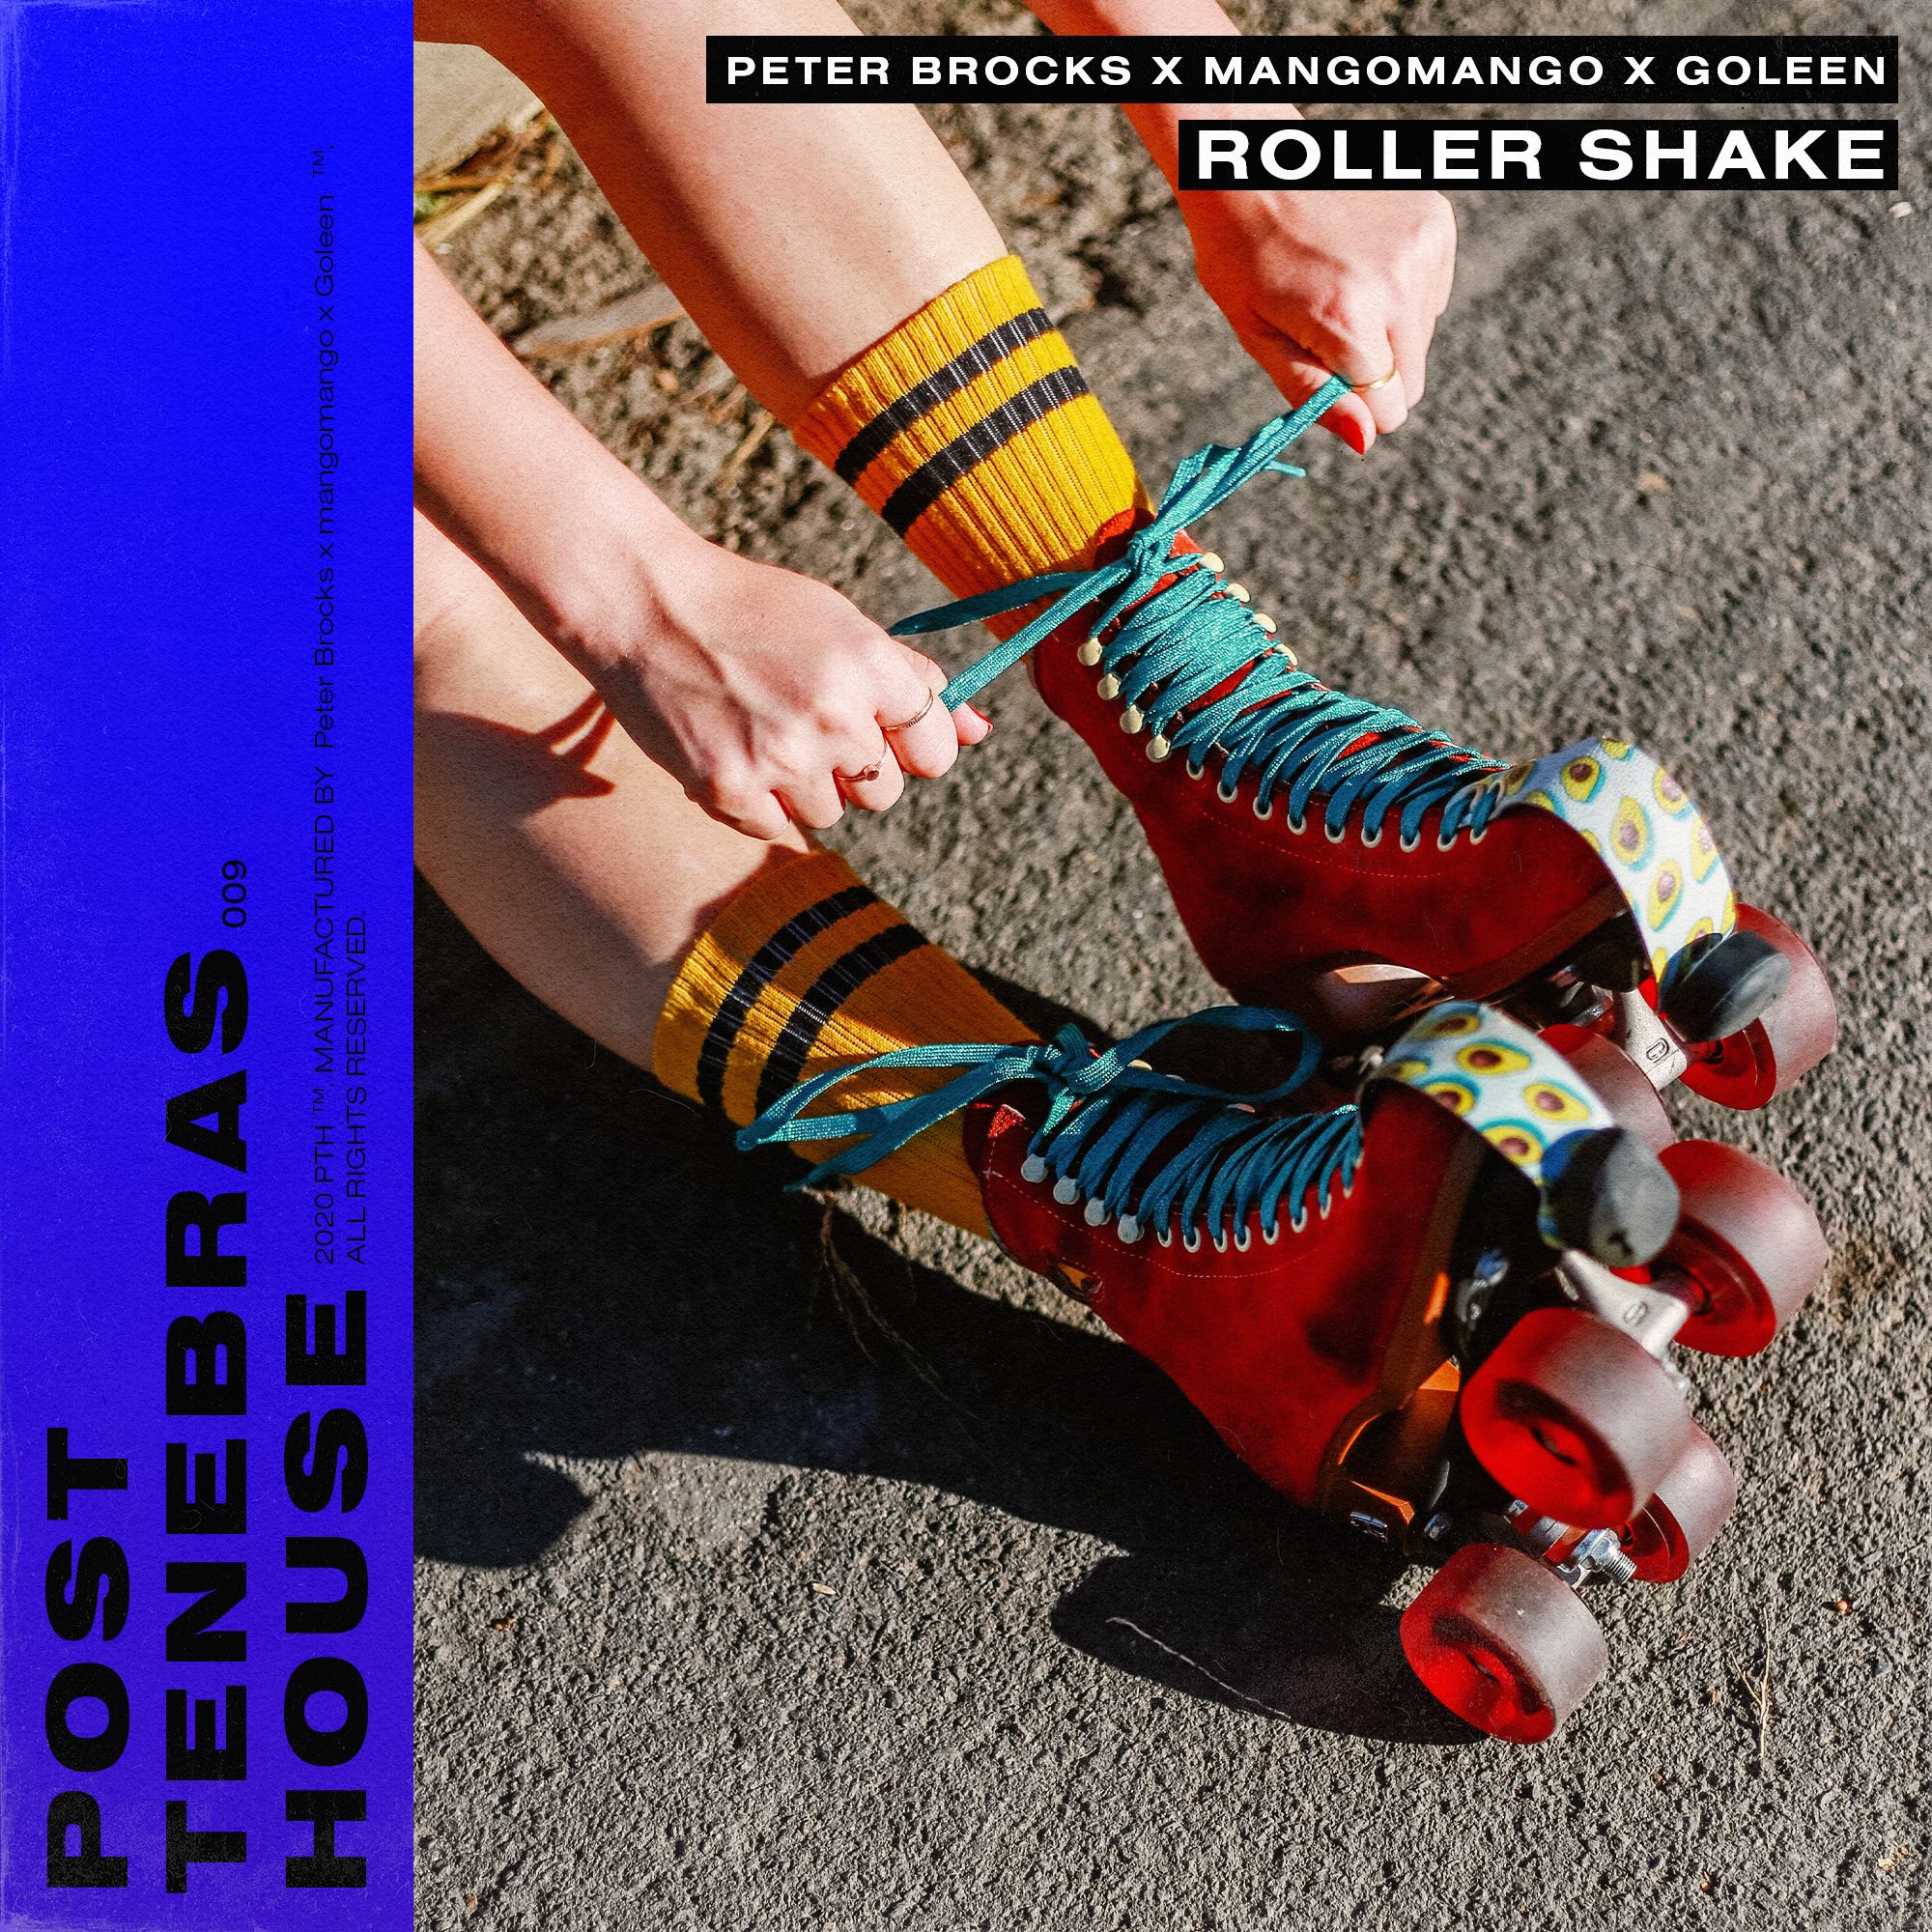 Cover de "Roller Shake" le nouveau Peter Brocks